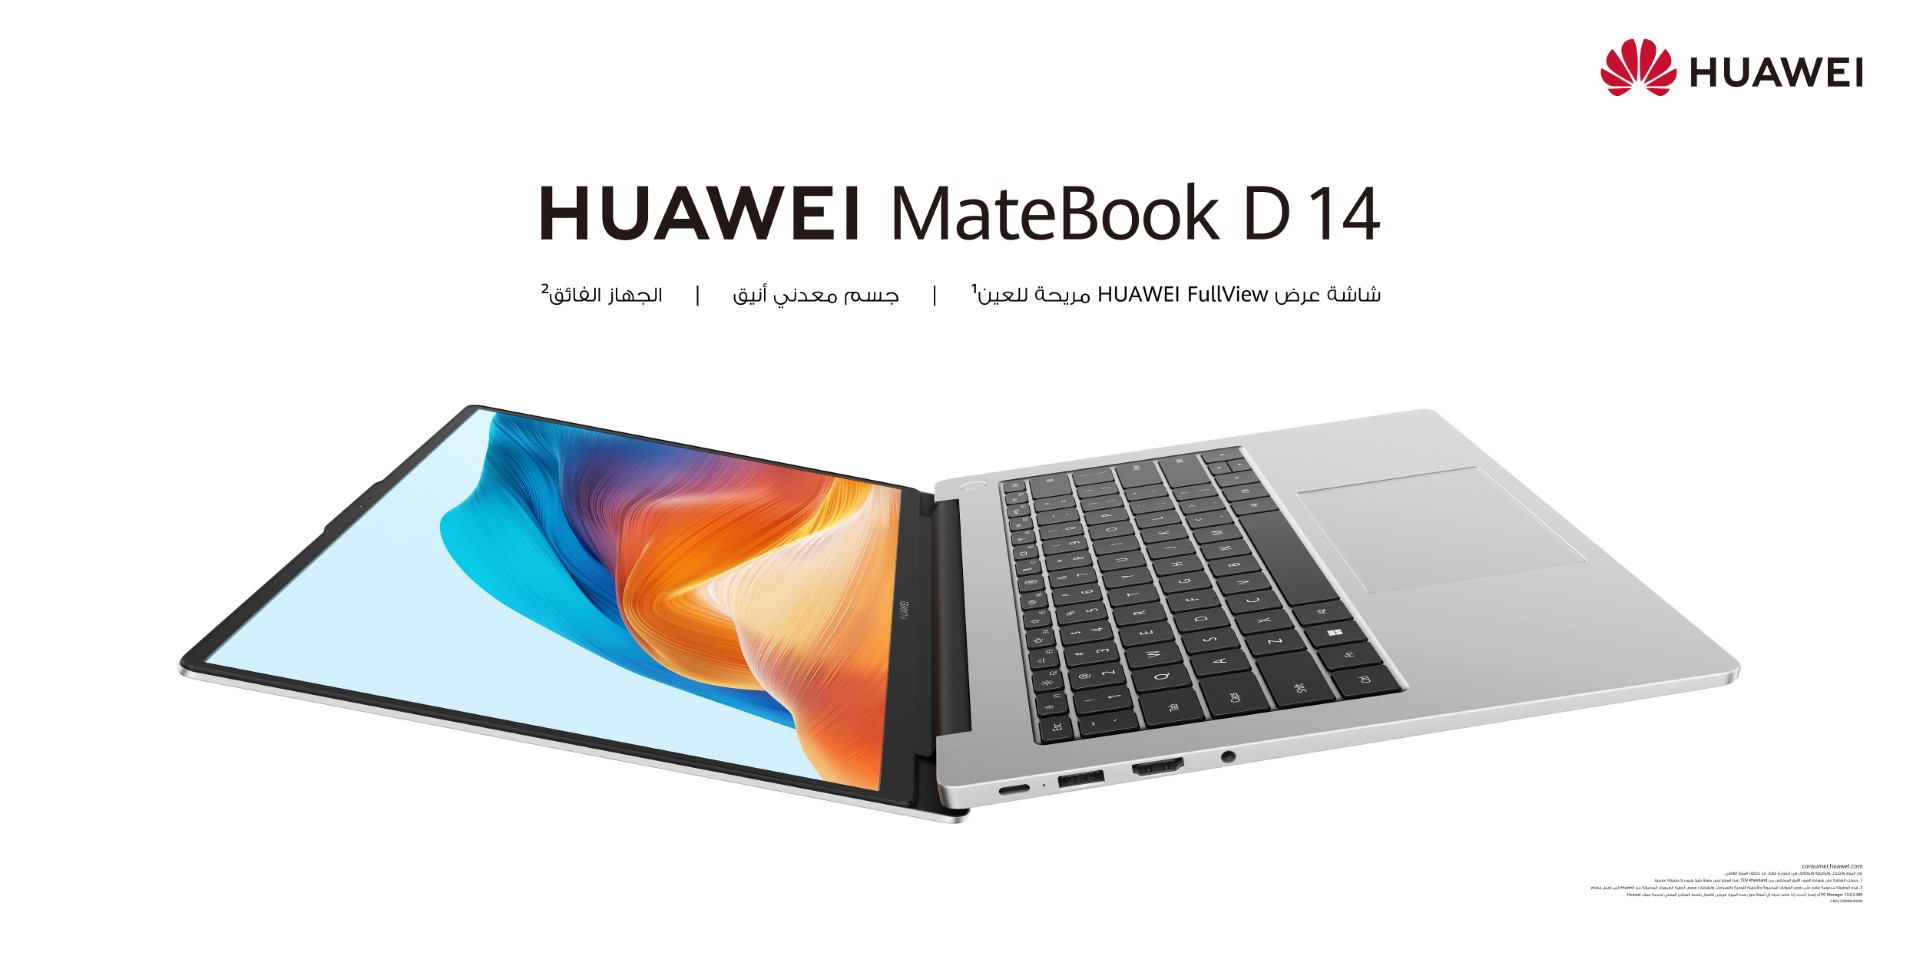 هواوي تعلن عن الحاسوبين المحمولين HUAWEI MateBook X Pro و HUAWEI MateBook D 14، بالإضافة إلى جهاز HUAWEI MatePad 11 اللوحي: المنتجات الثلاثية الجديدة من أجل الاتصال والأداء السلس